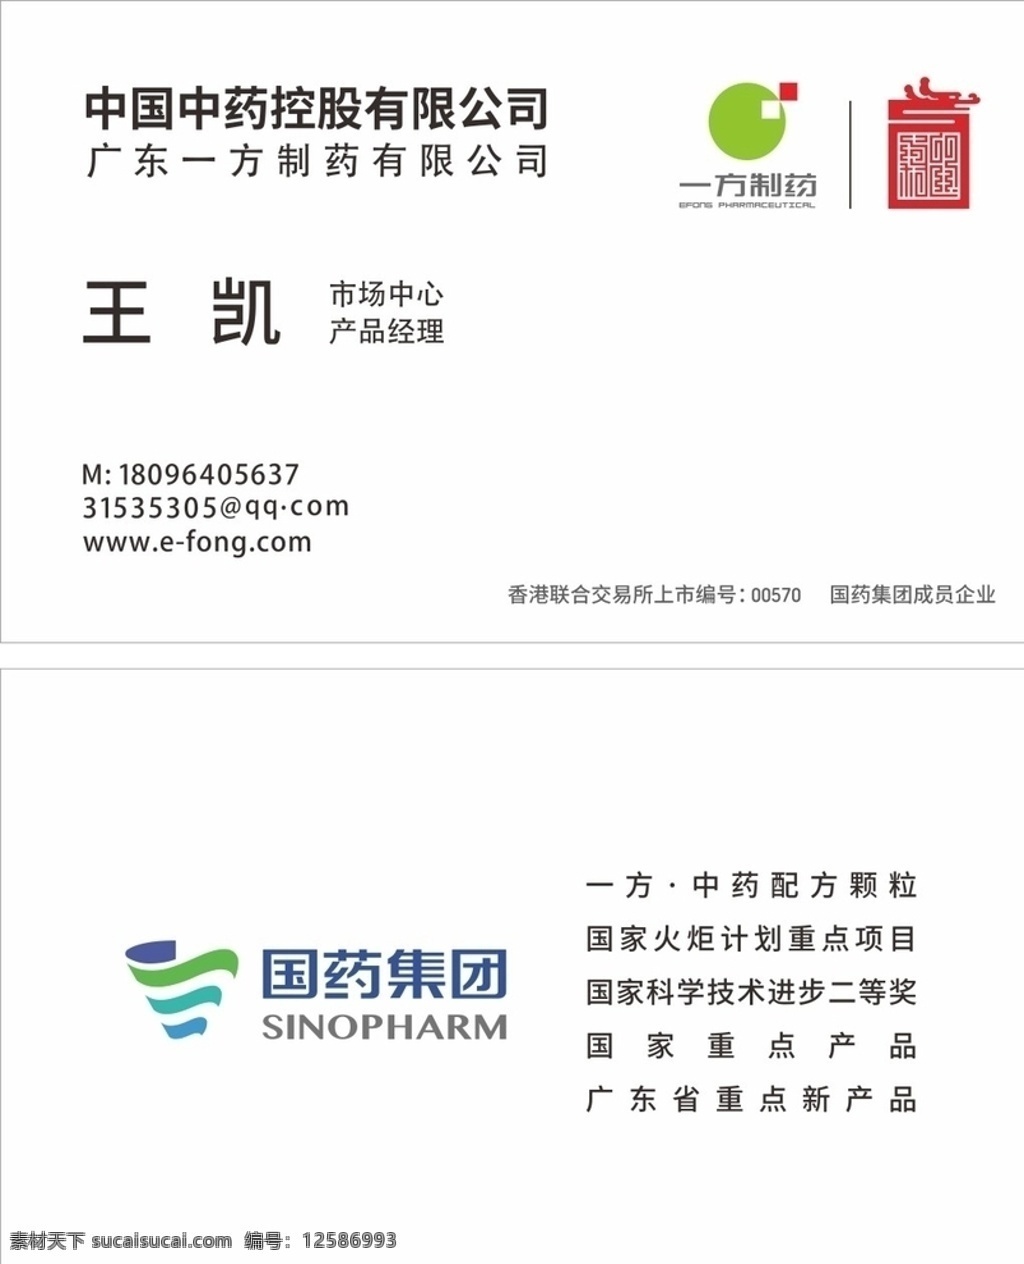 国药集团名片 国药集团标志 国药 集团 logo 一方制药 中国中药 标志图标 企业 标志